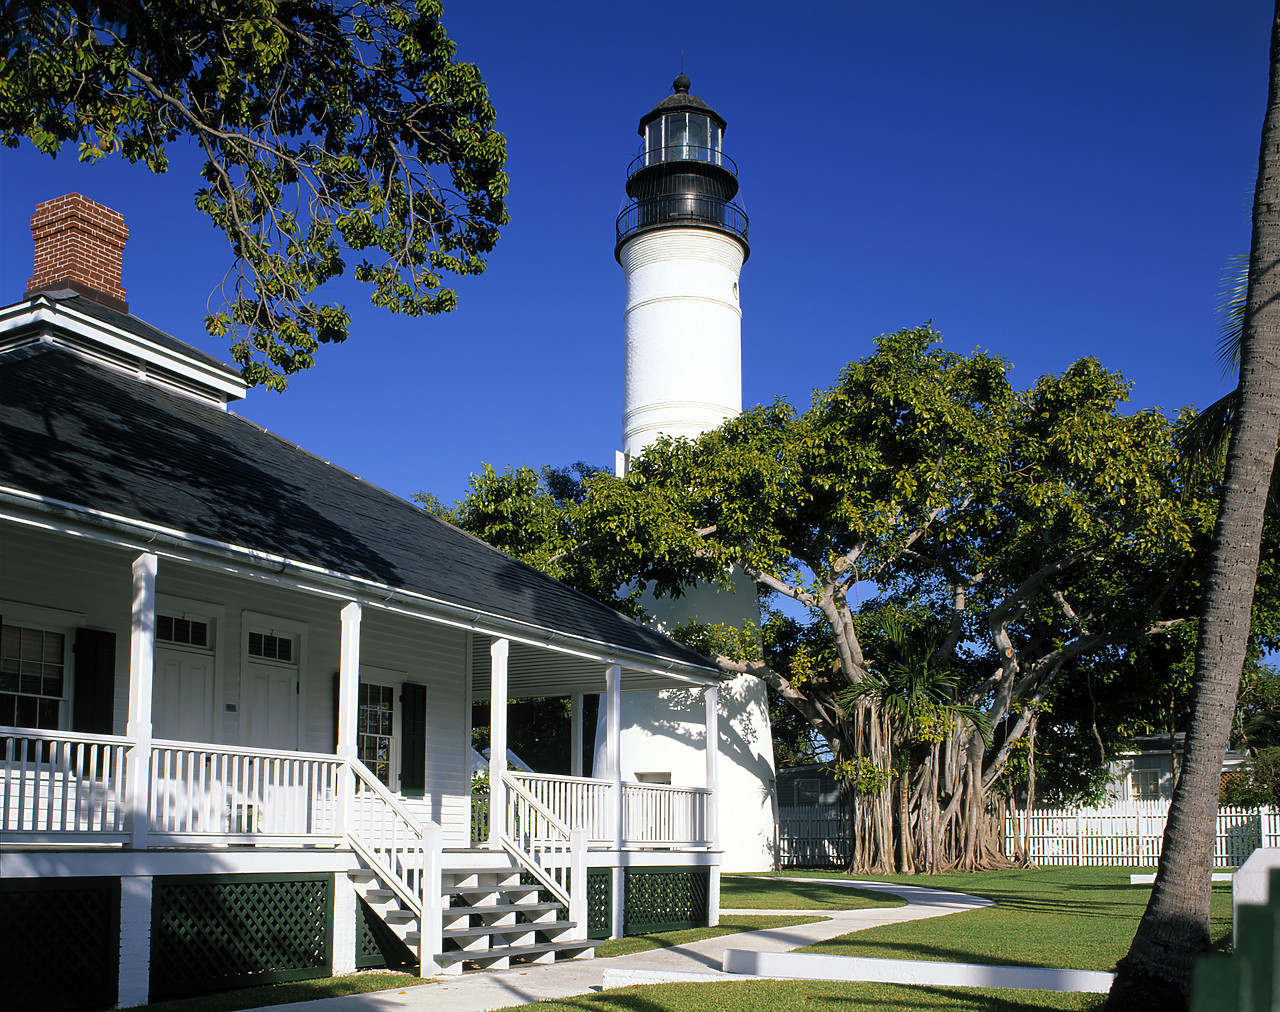 #010226-2 - Lighthouse, Key West, Florida, USA